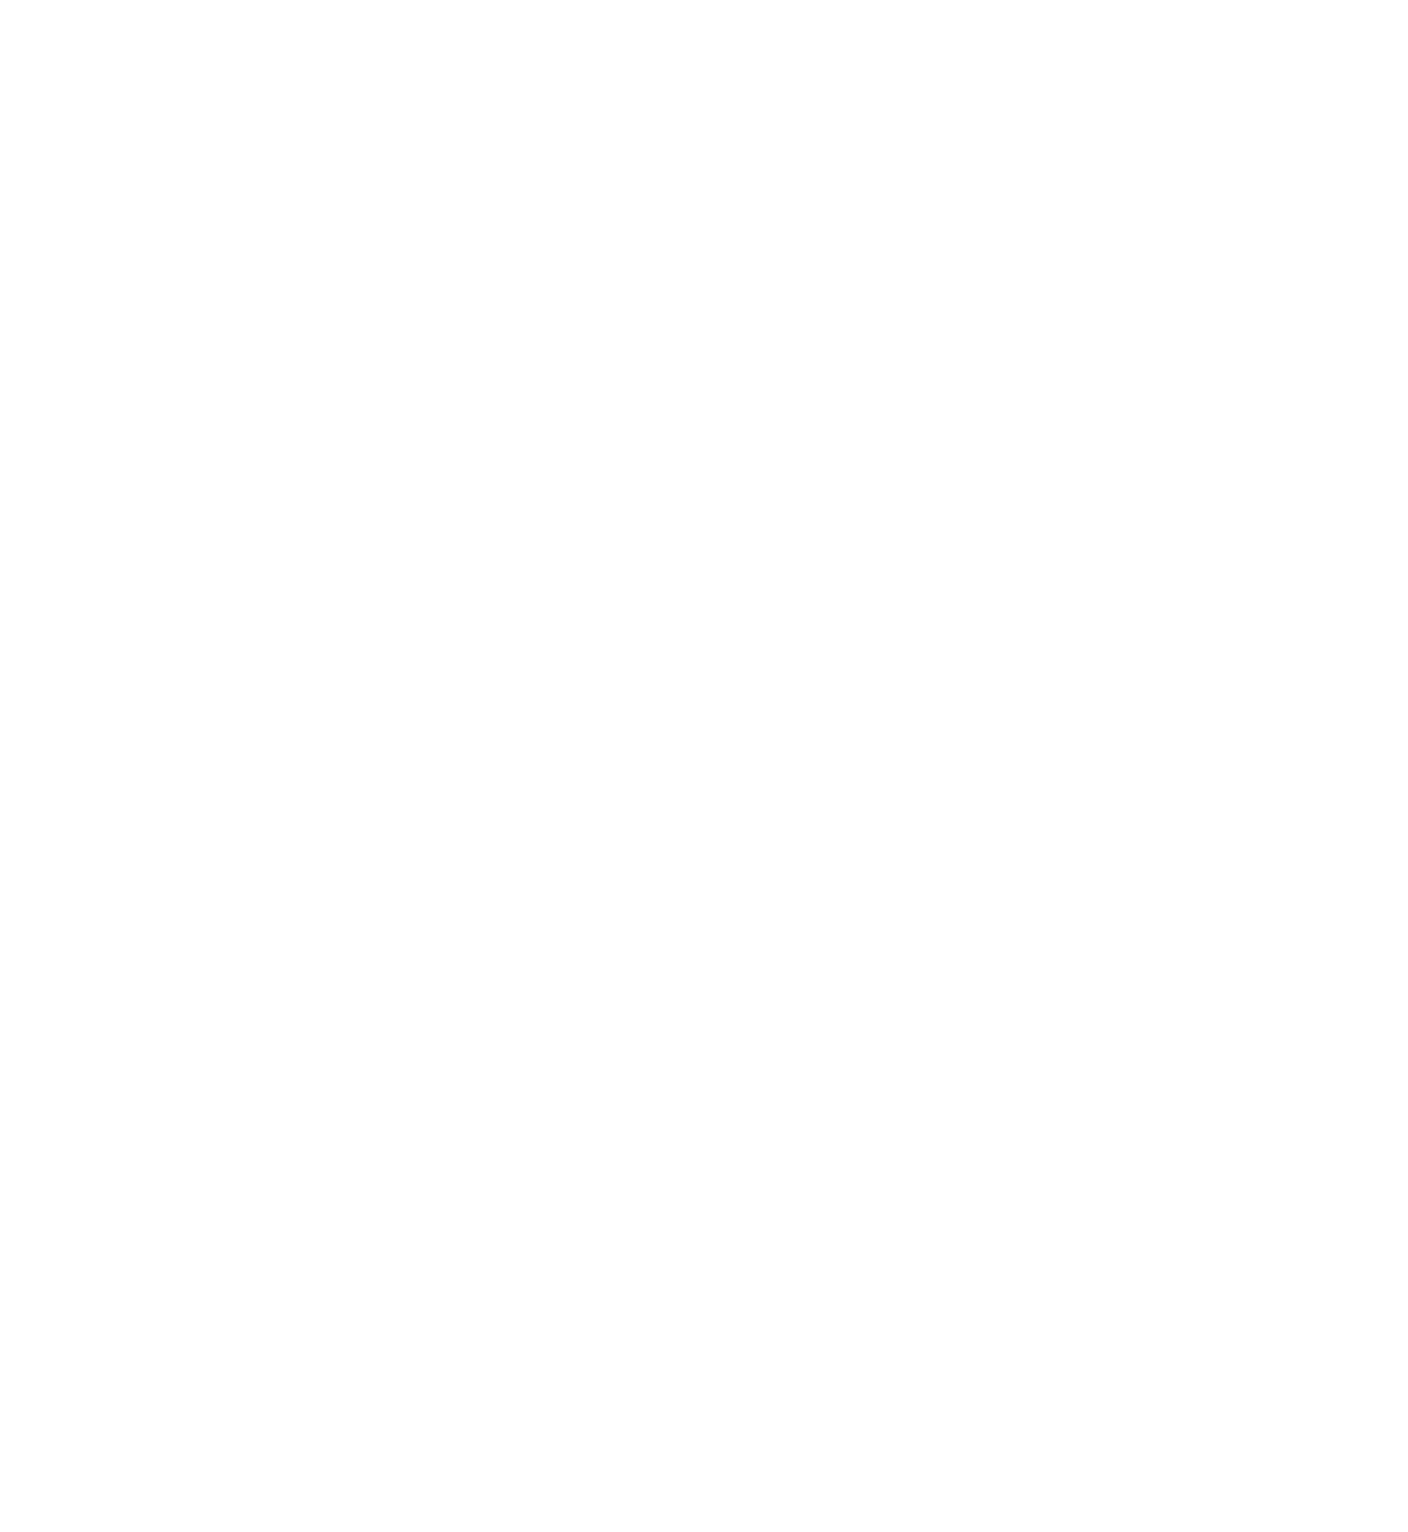 Síminn hf. logo for dark backgrounds (transparent PNG)